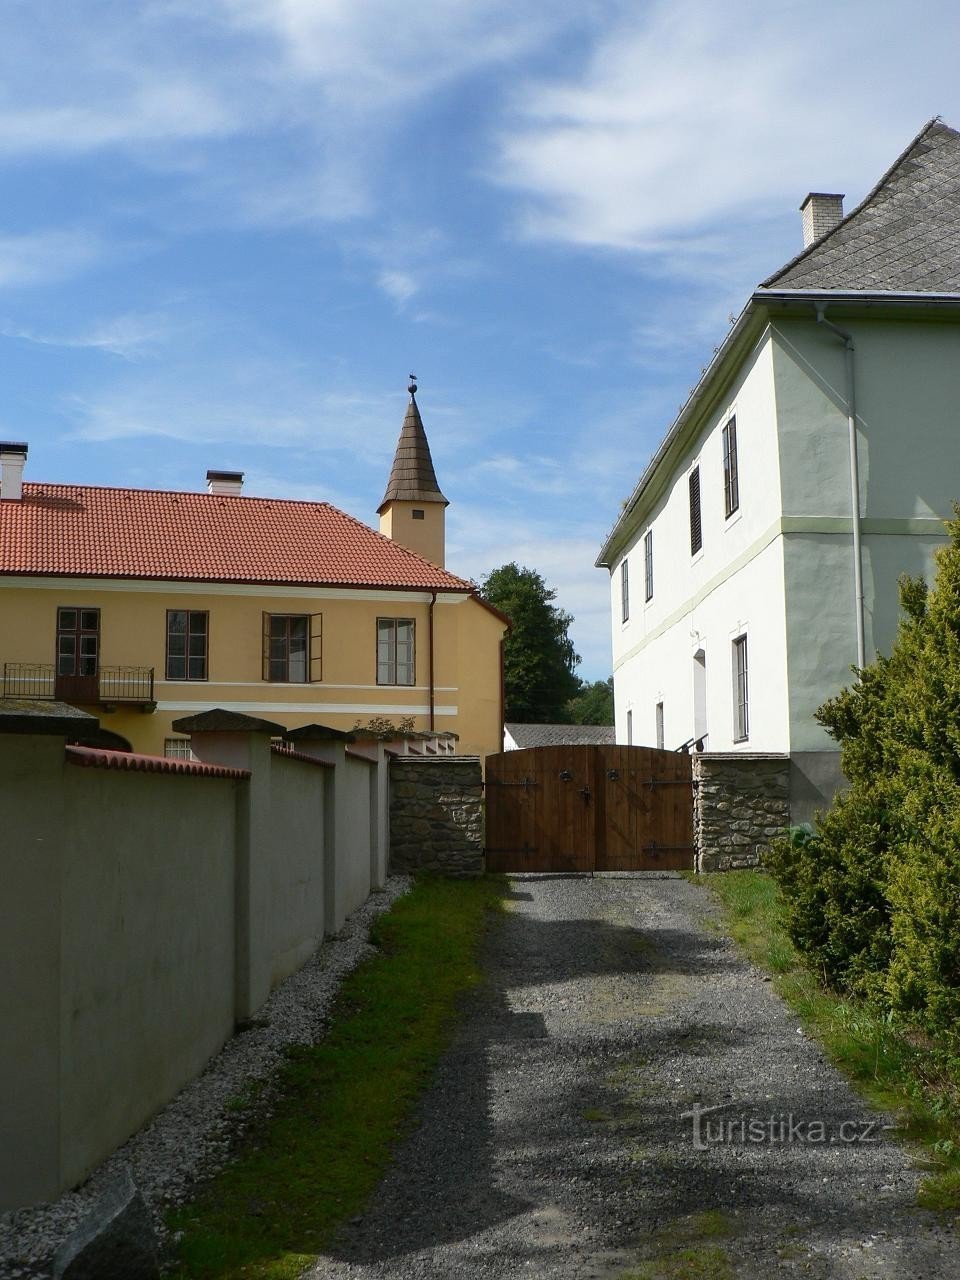 Castelos Jindřichovice